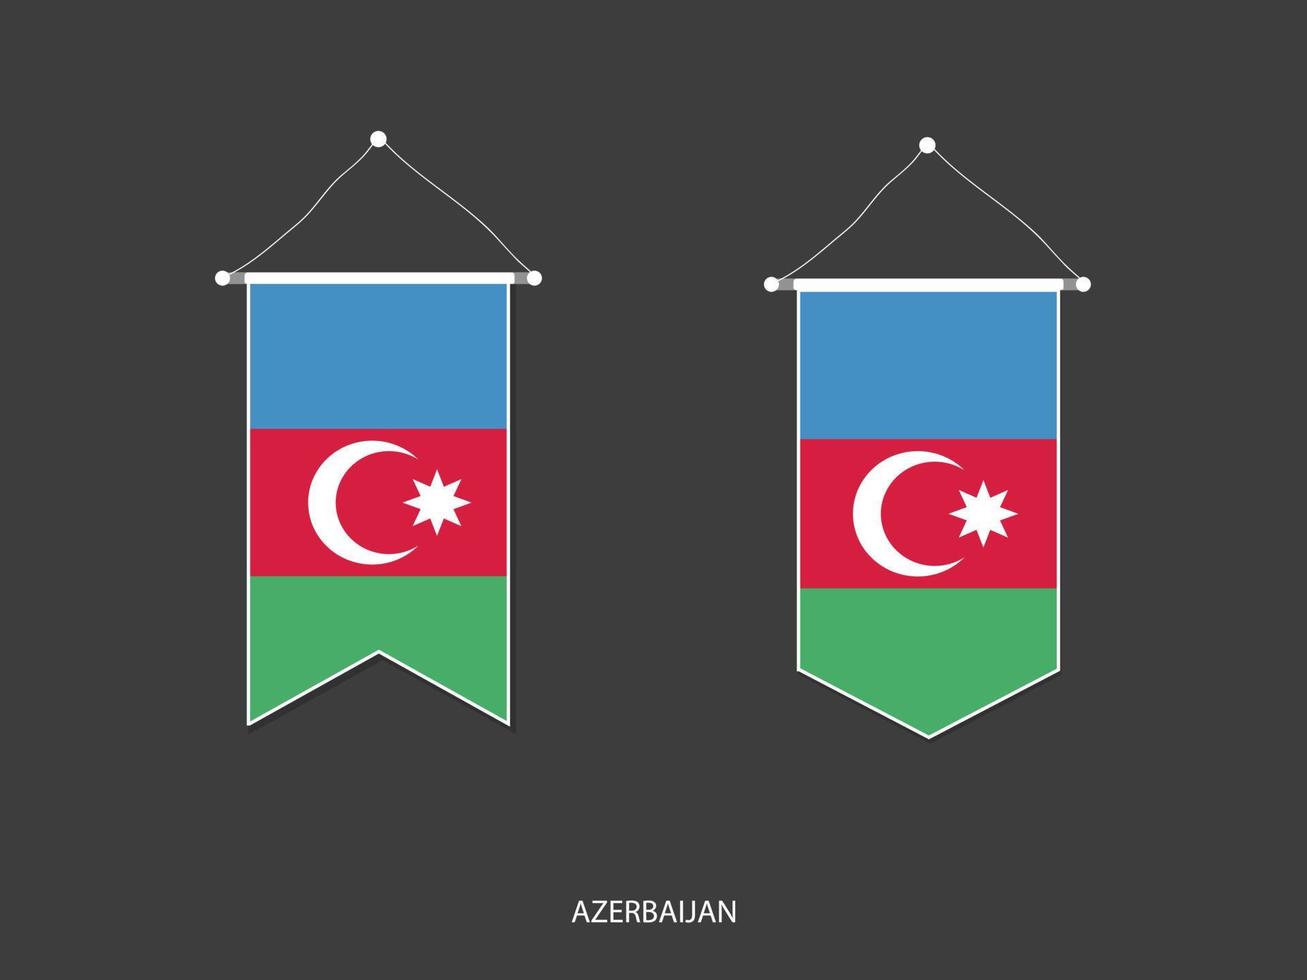 drapeau azerbaïdjanais sous diverses formes, vecteur de fanion de drapeau de football, illustration vectorielle.